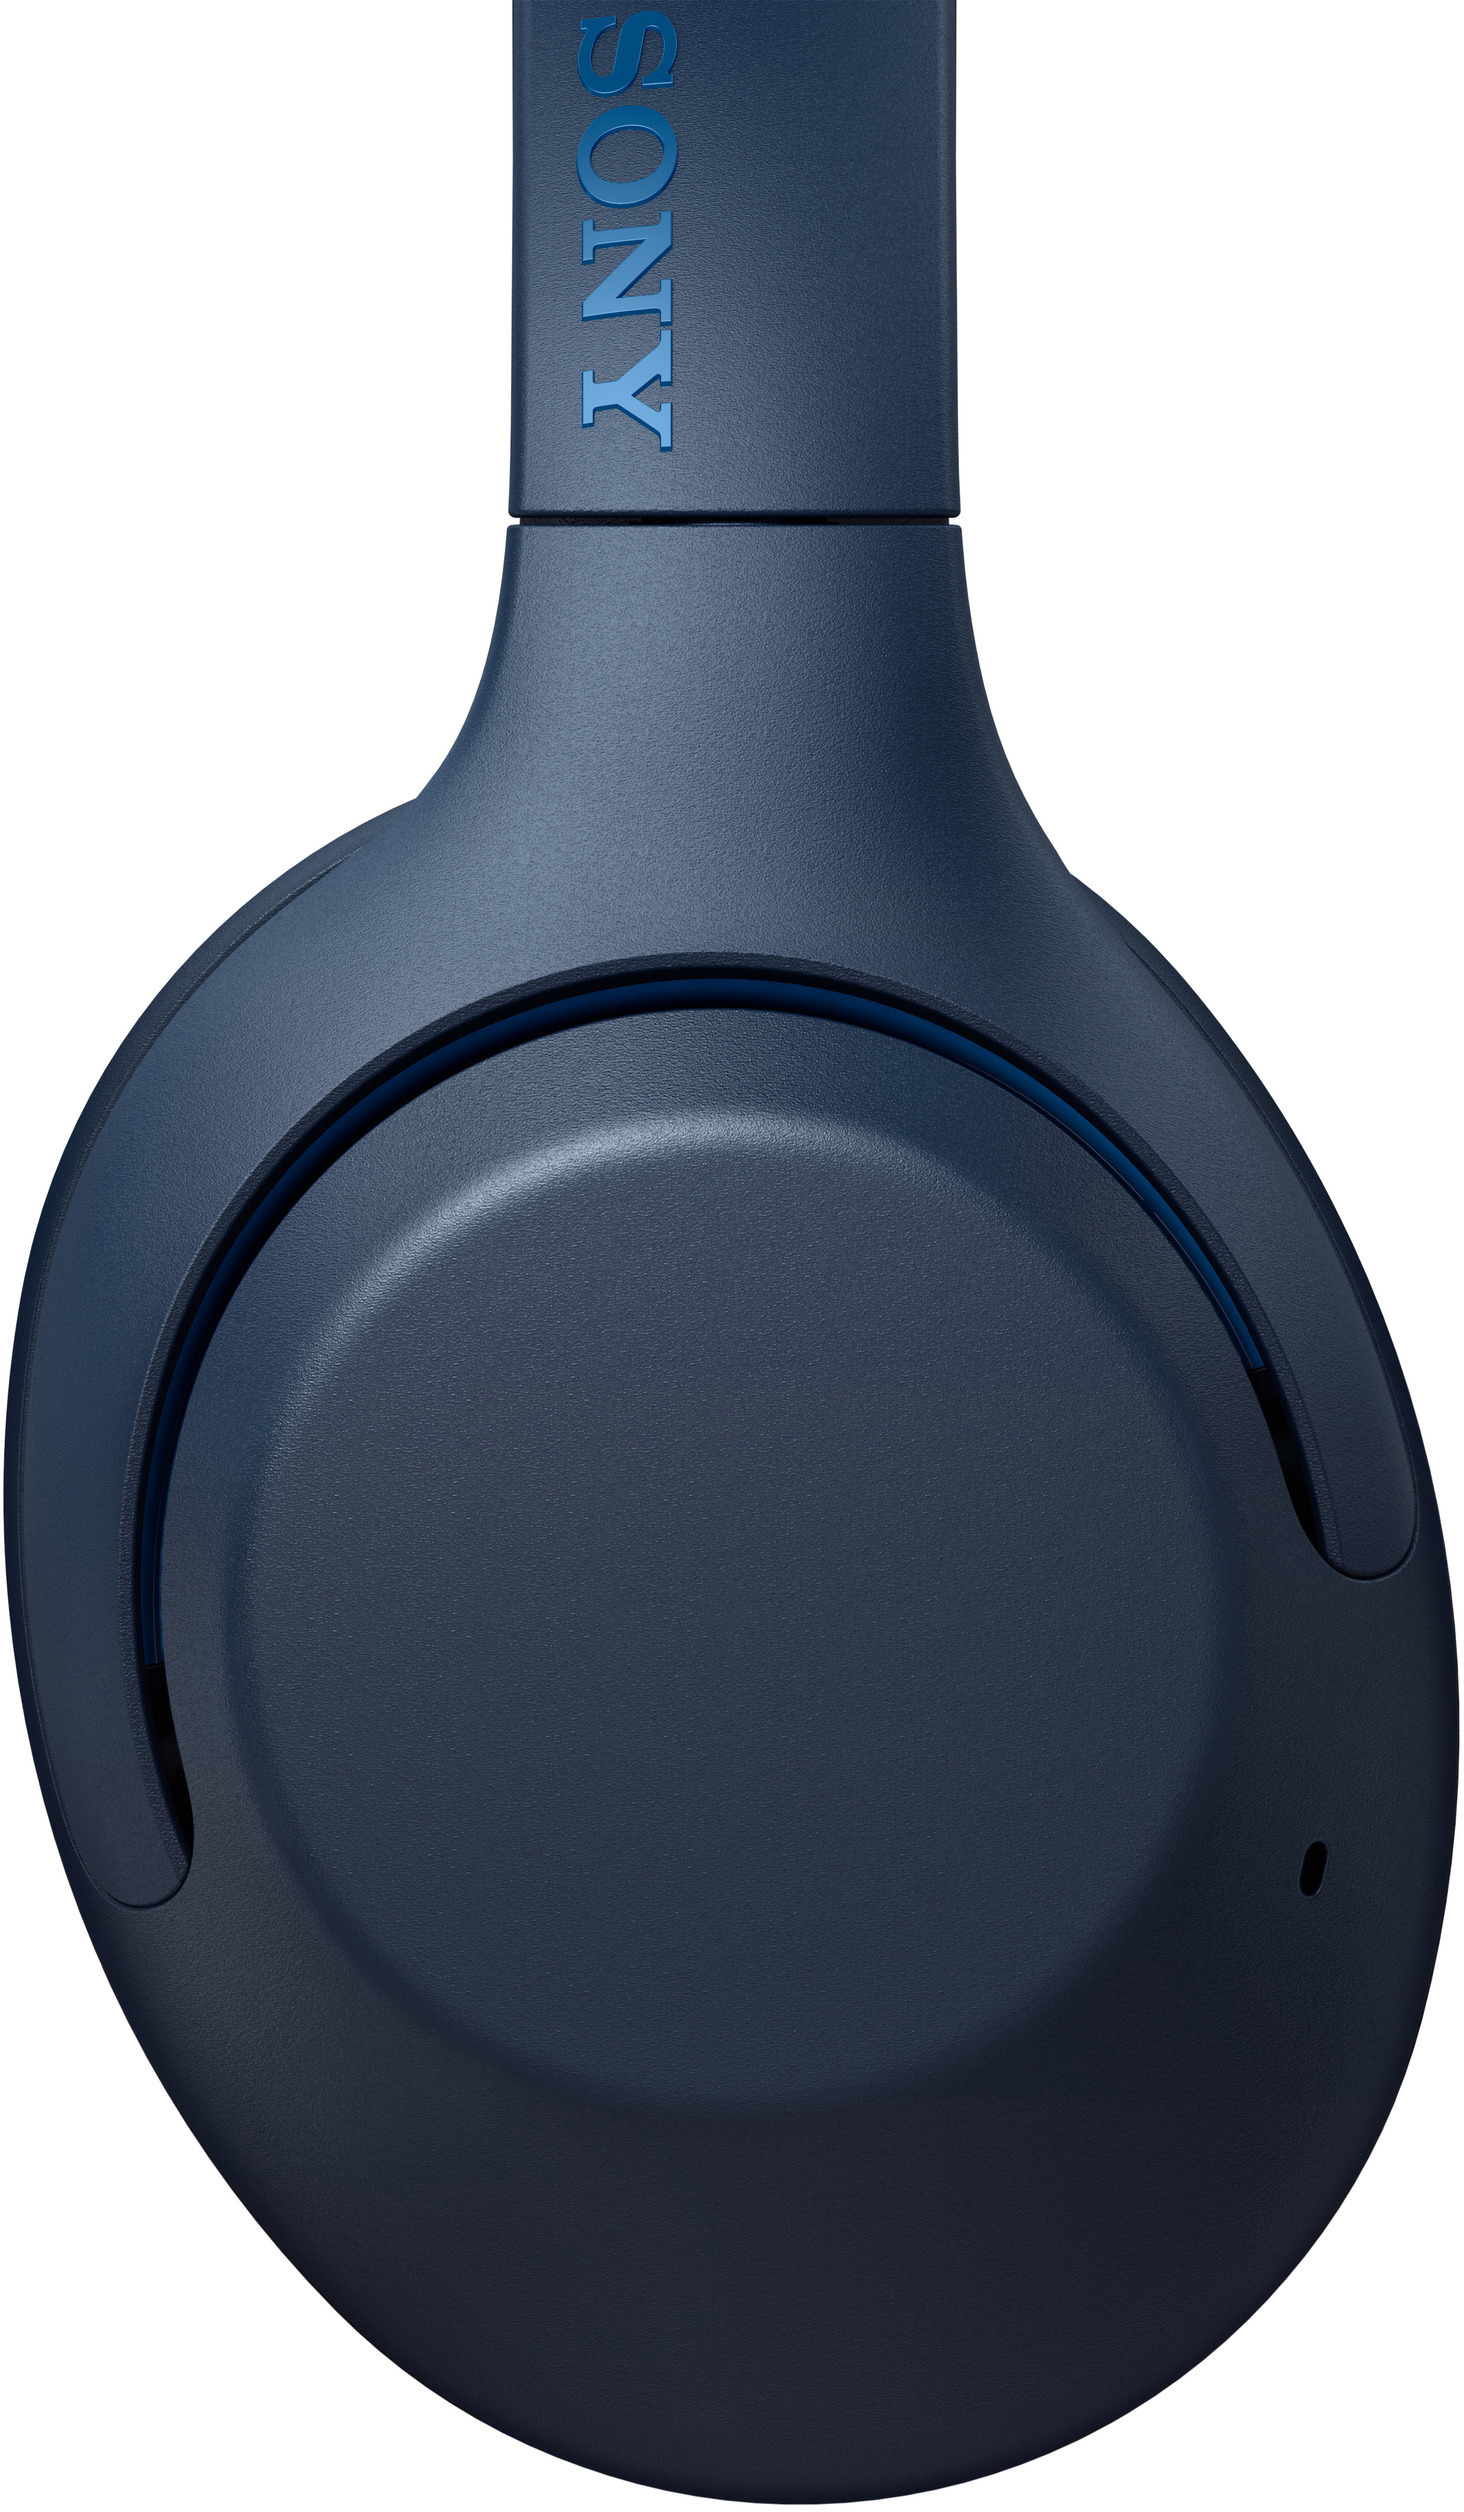 WH-XB900N, Over-ear SONY Kopfhörer Blau Bluetooth